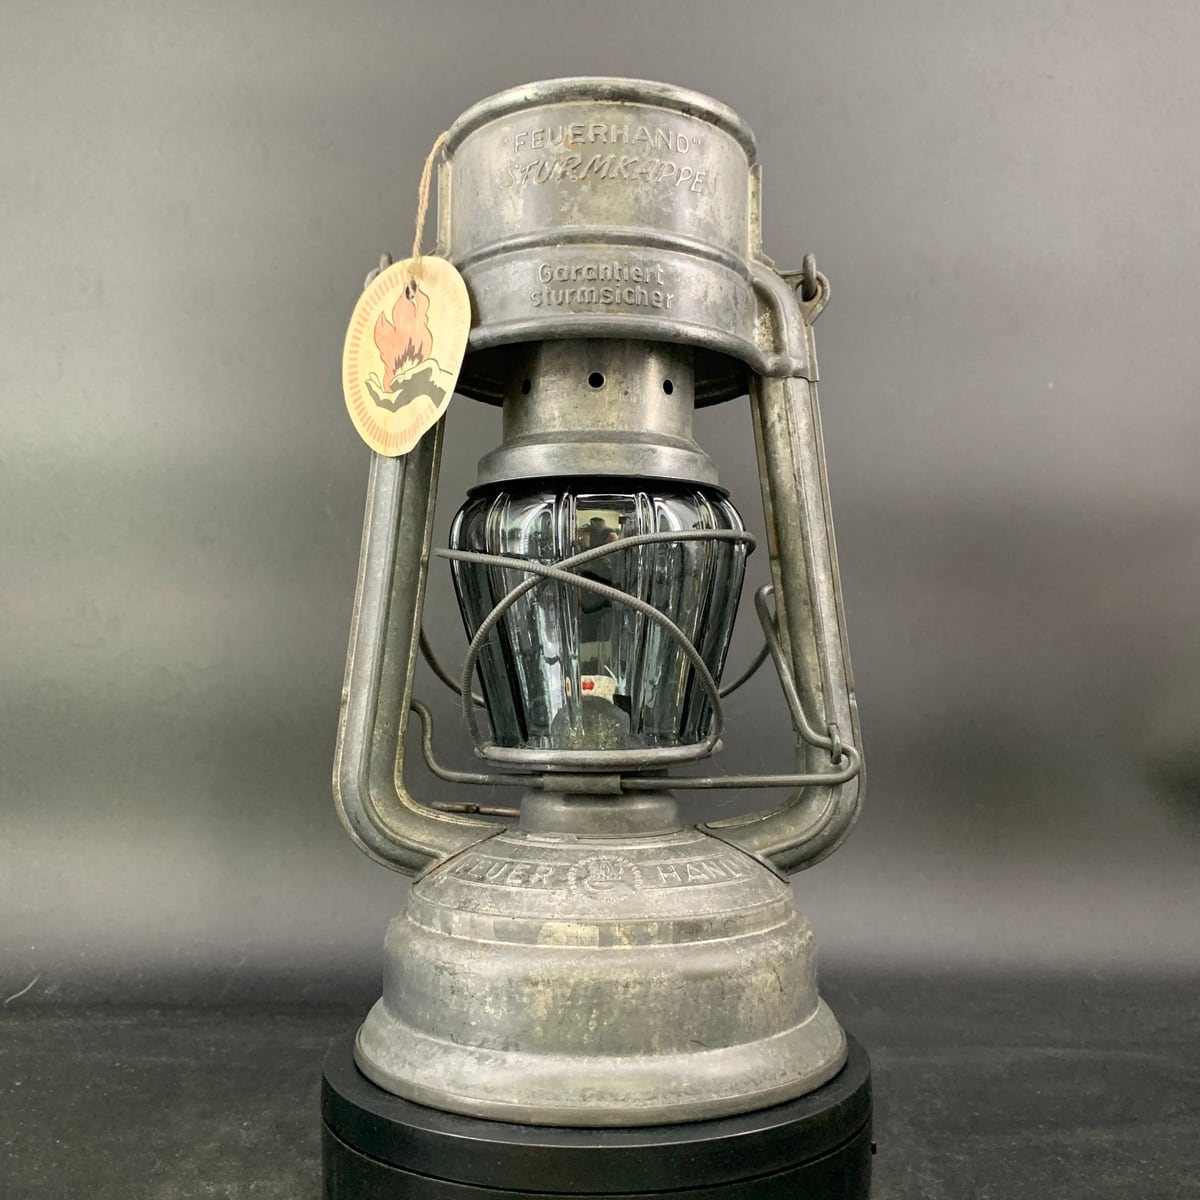 Oldman's lantern